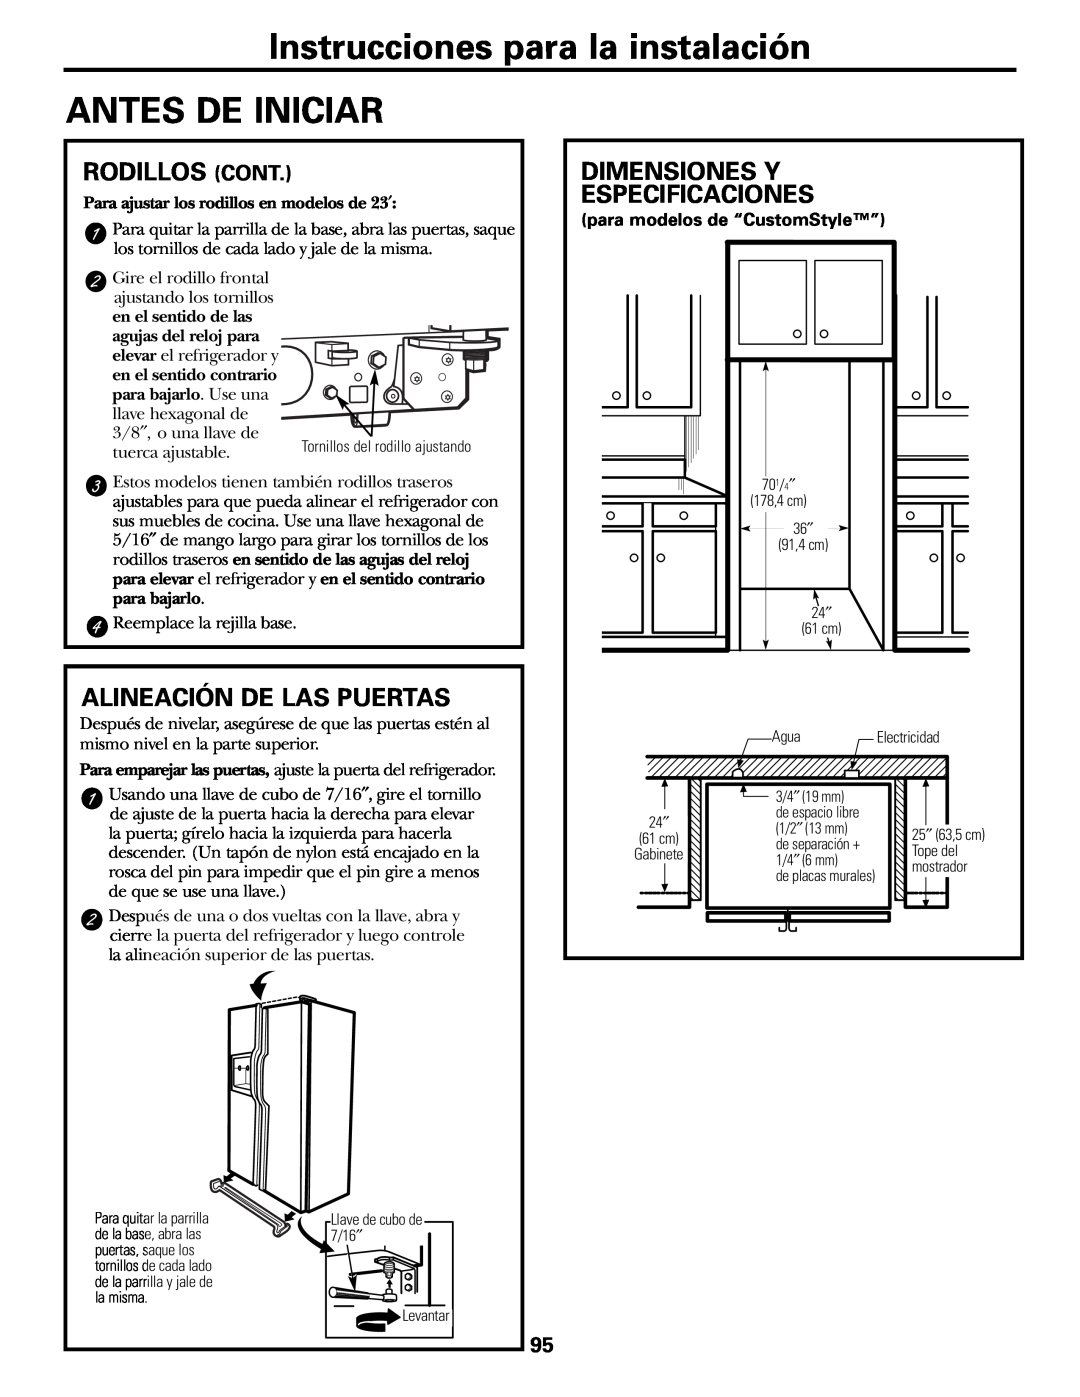 GE 200D2600P015 Instrucciones para la instalación ANTES DE INICIAR, Rodillos Cont, Alineación De Las Puertas 